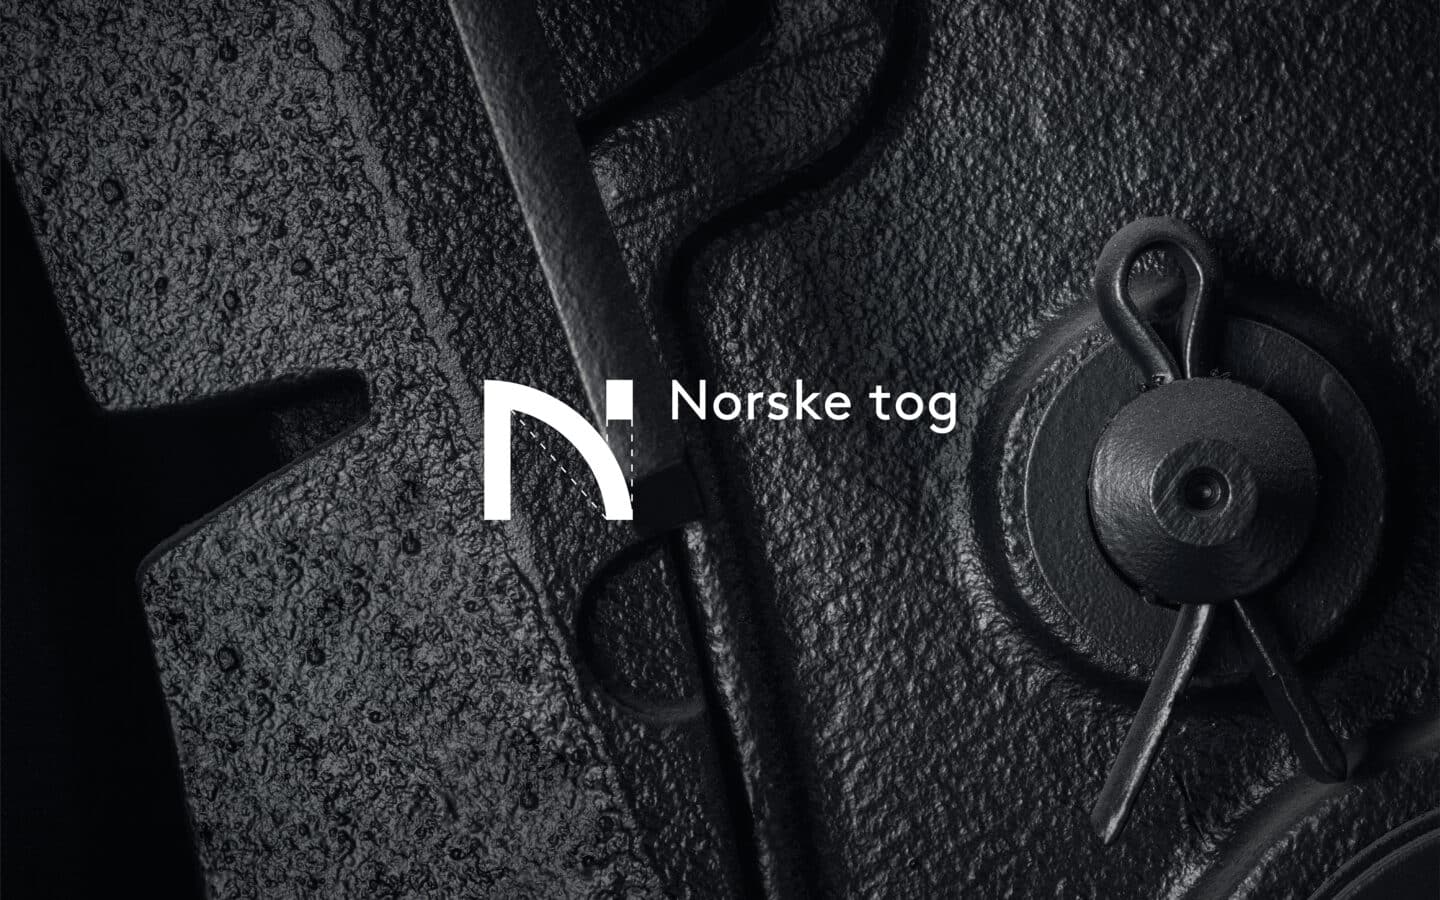 Detaljfoto av en del på et tog i svarthvitt, og med Norske tog logo oppå.